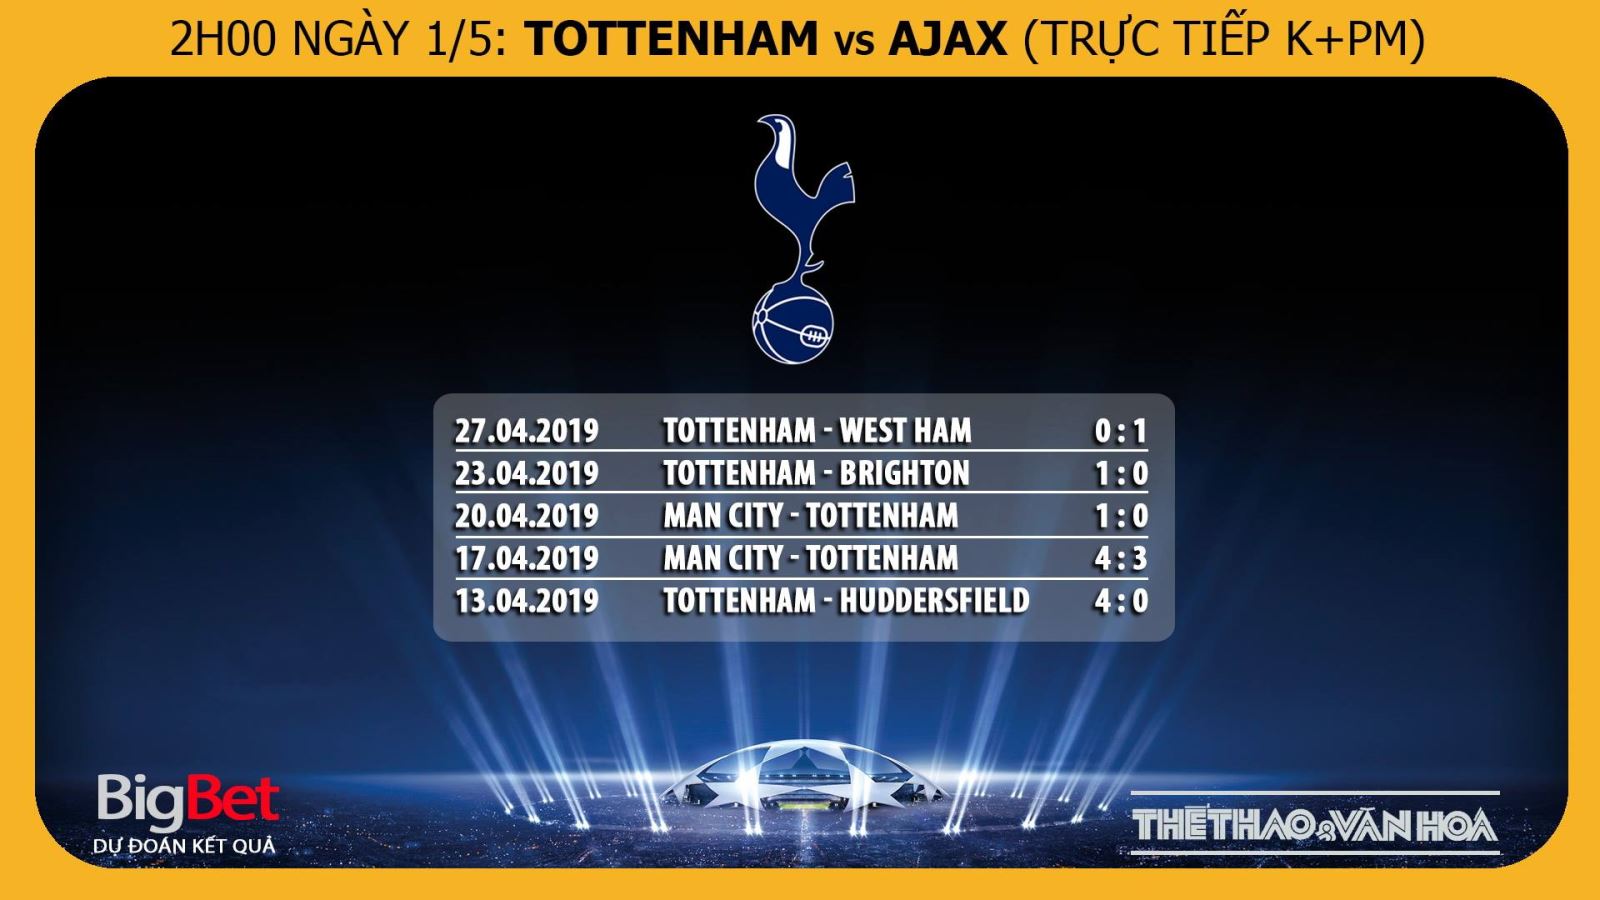 nhận định bóng đá Tottenham vs Ajax, ajax, tottenham, trực tiếp tottenham vs ajax, tottenham vs ajax, bán kết cúp C1, trực tiếp bóng đá C1